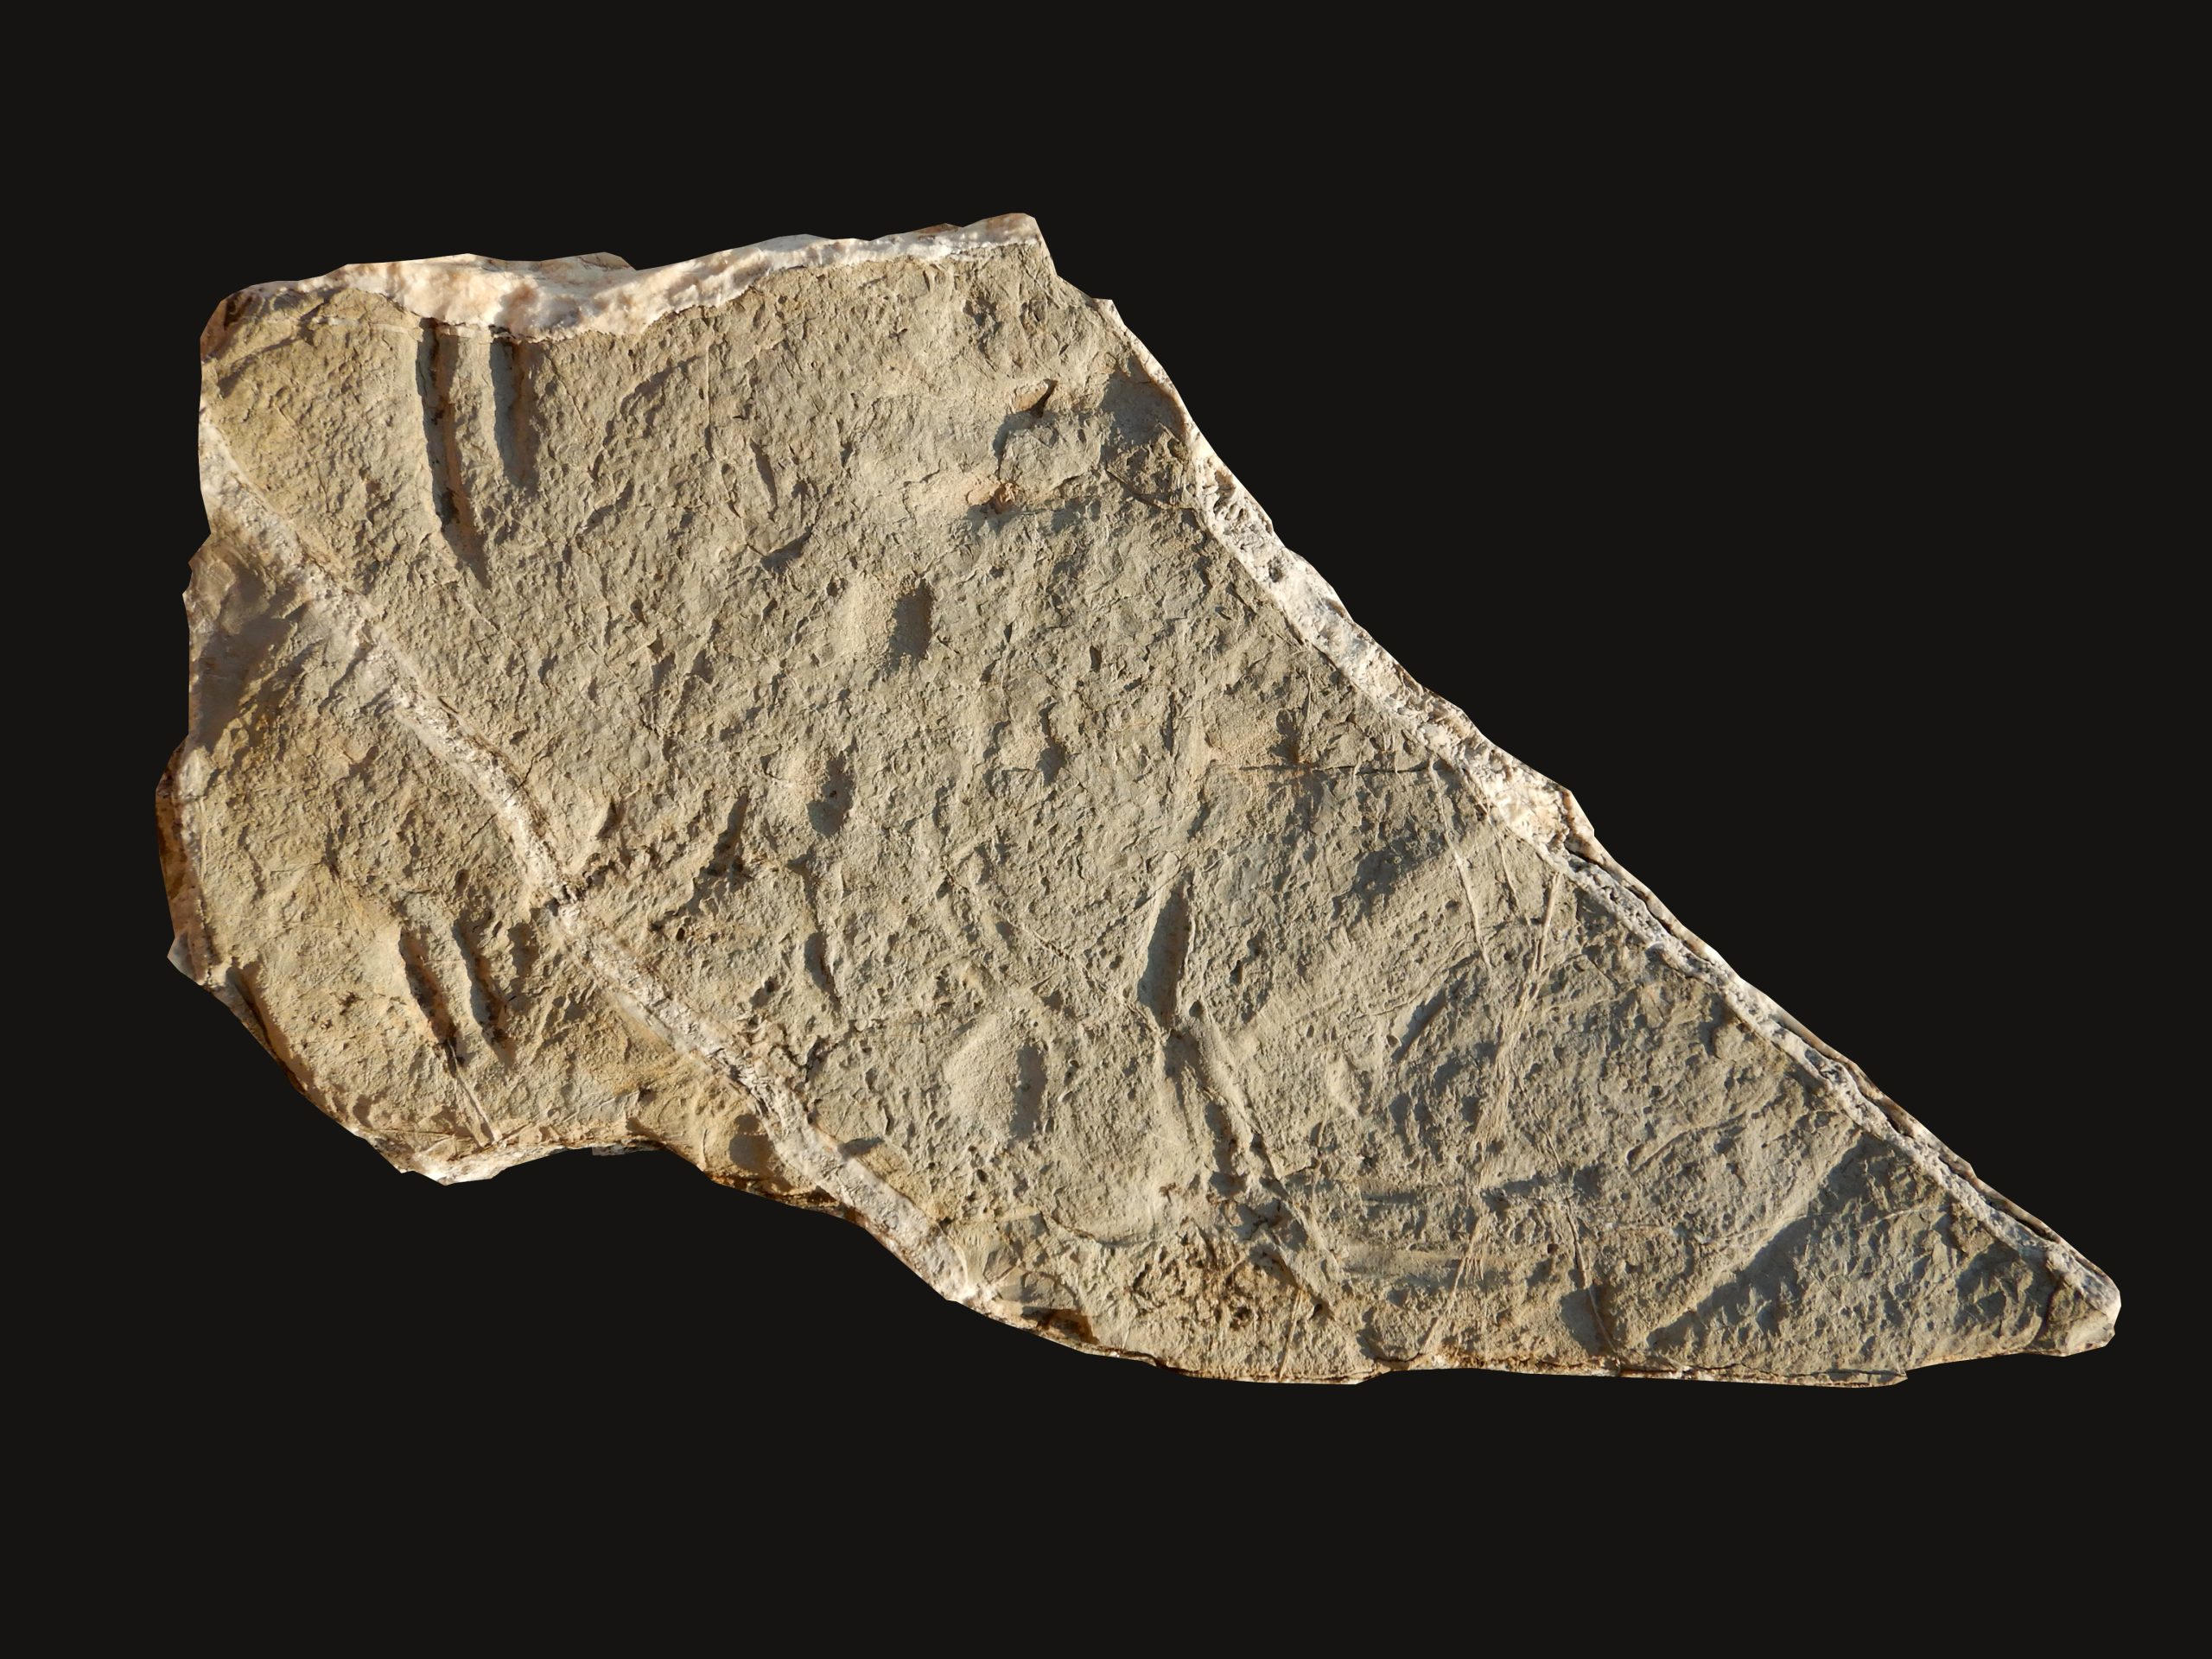 “Saya tidak percaya apa yang saya lihat” – menemukan bagian yang hilang dari teka-teki evolusi pada batuan berusia 130 juta tahun